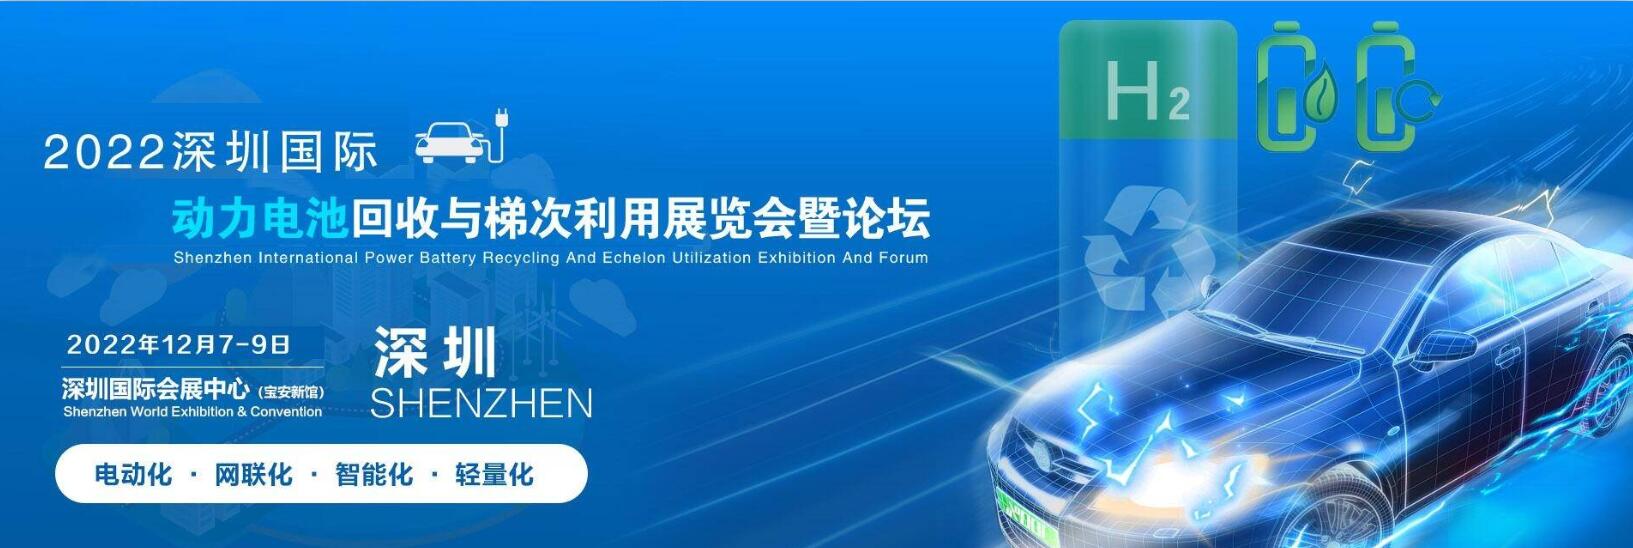 2022深圳国际动力电池回收与梯次利用展览会暨论坛